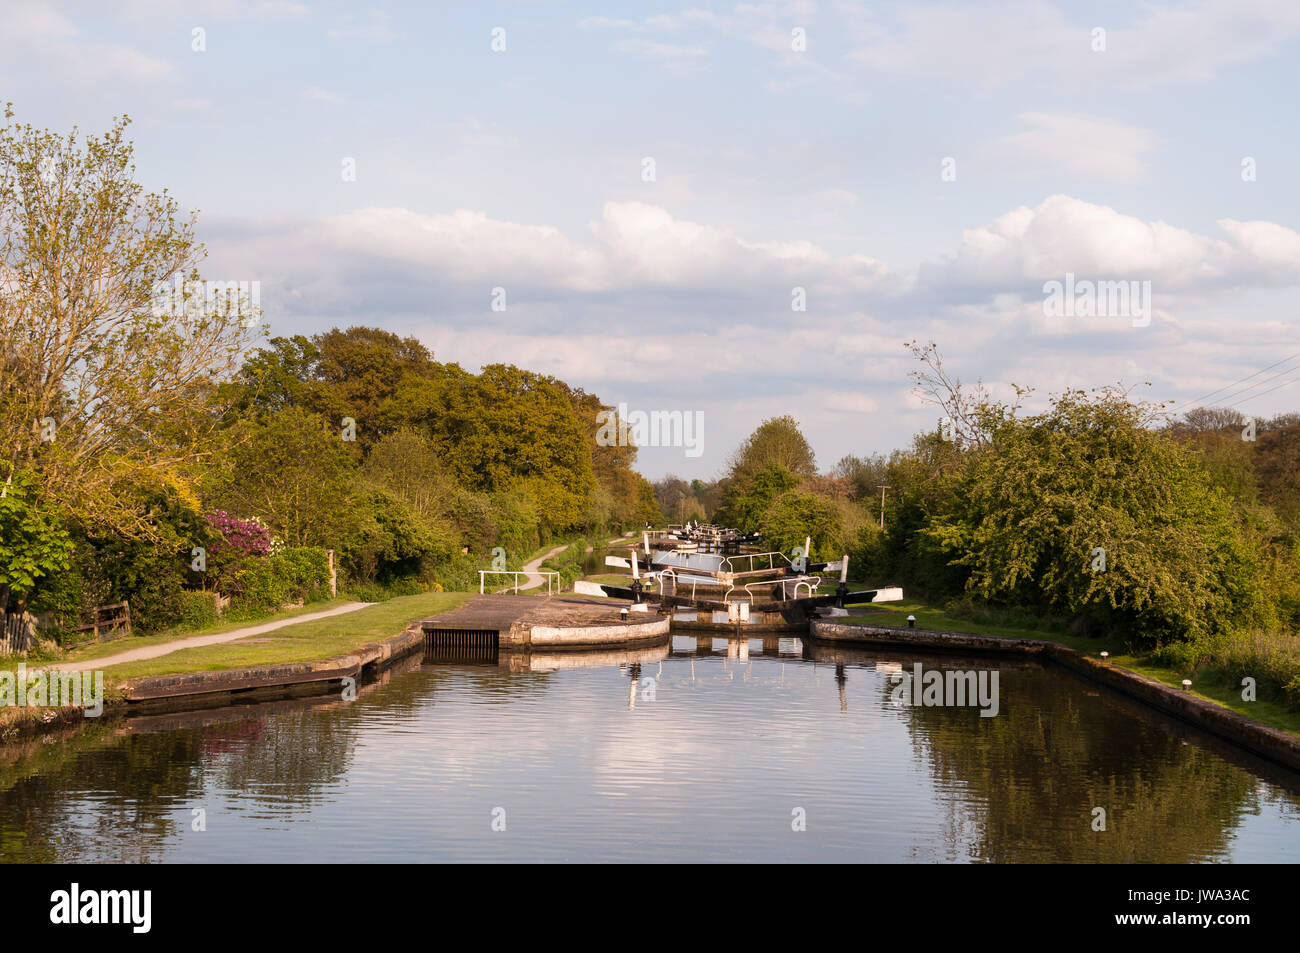 Hatton écluses sur le Canal Grand Union avec visitor centre, Warwickshire, Royaume-Uni Banque D'Images